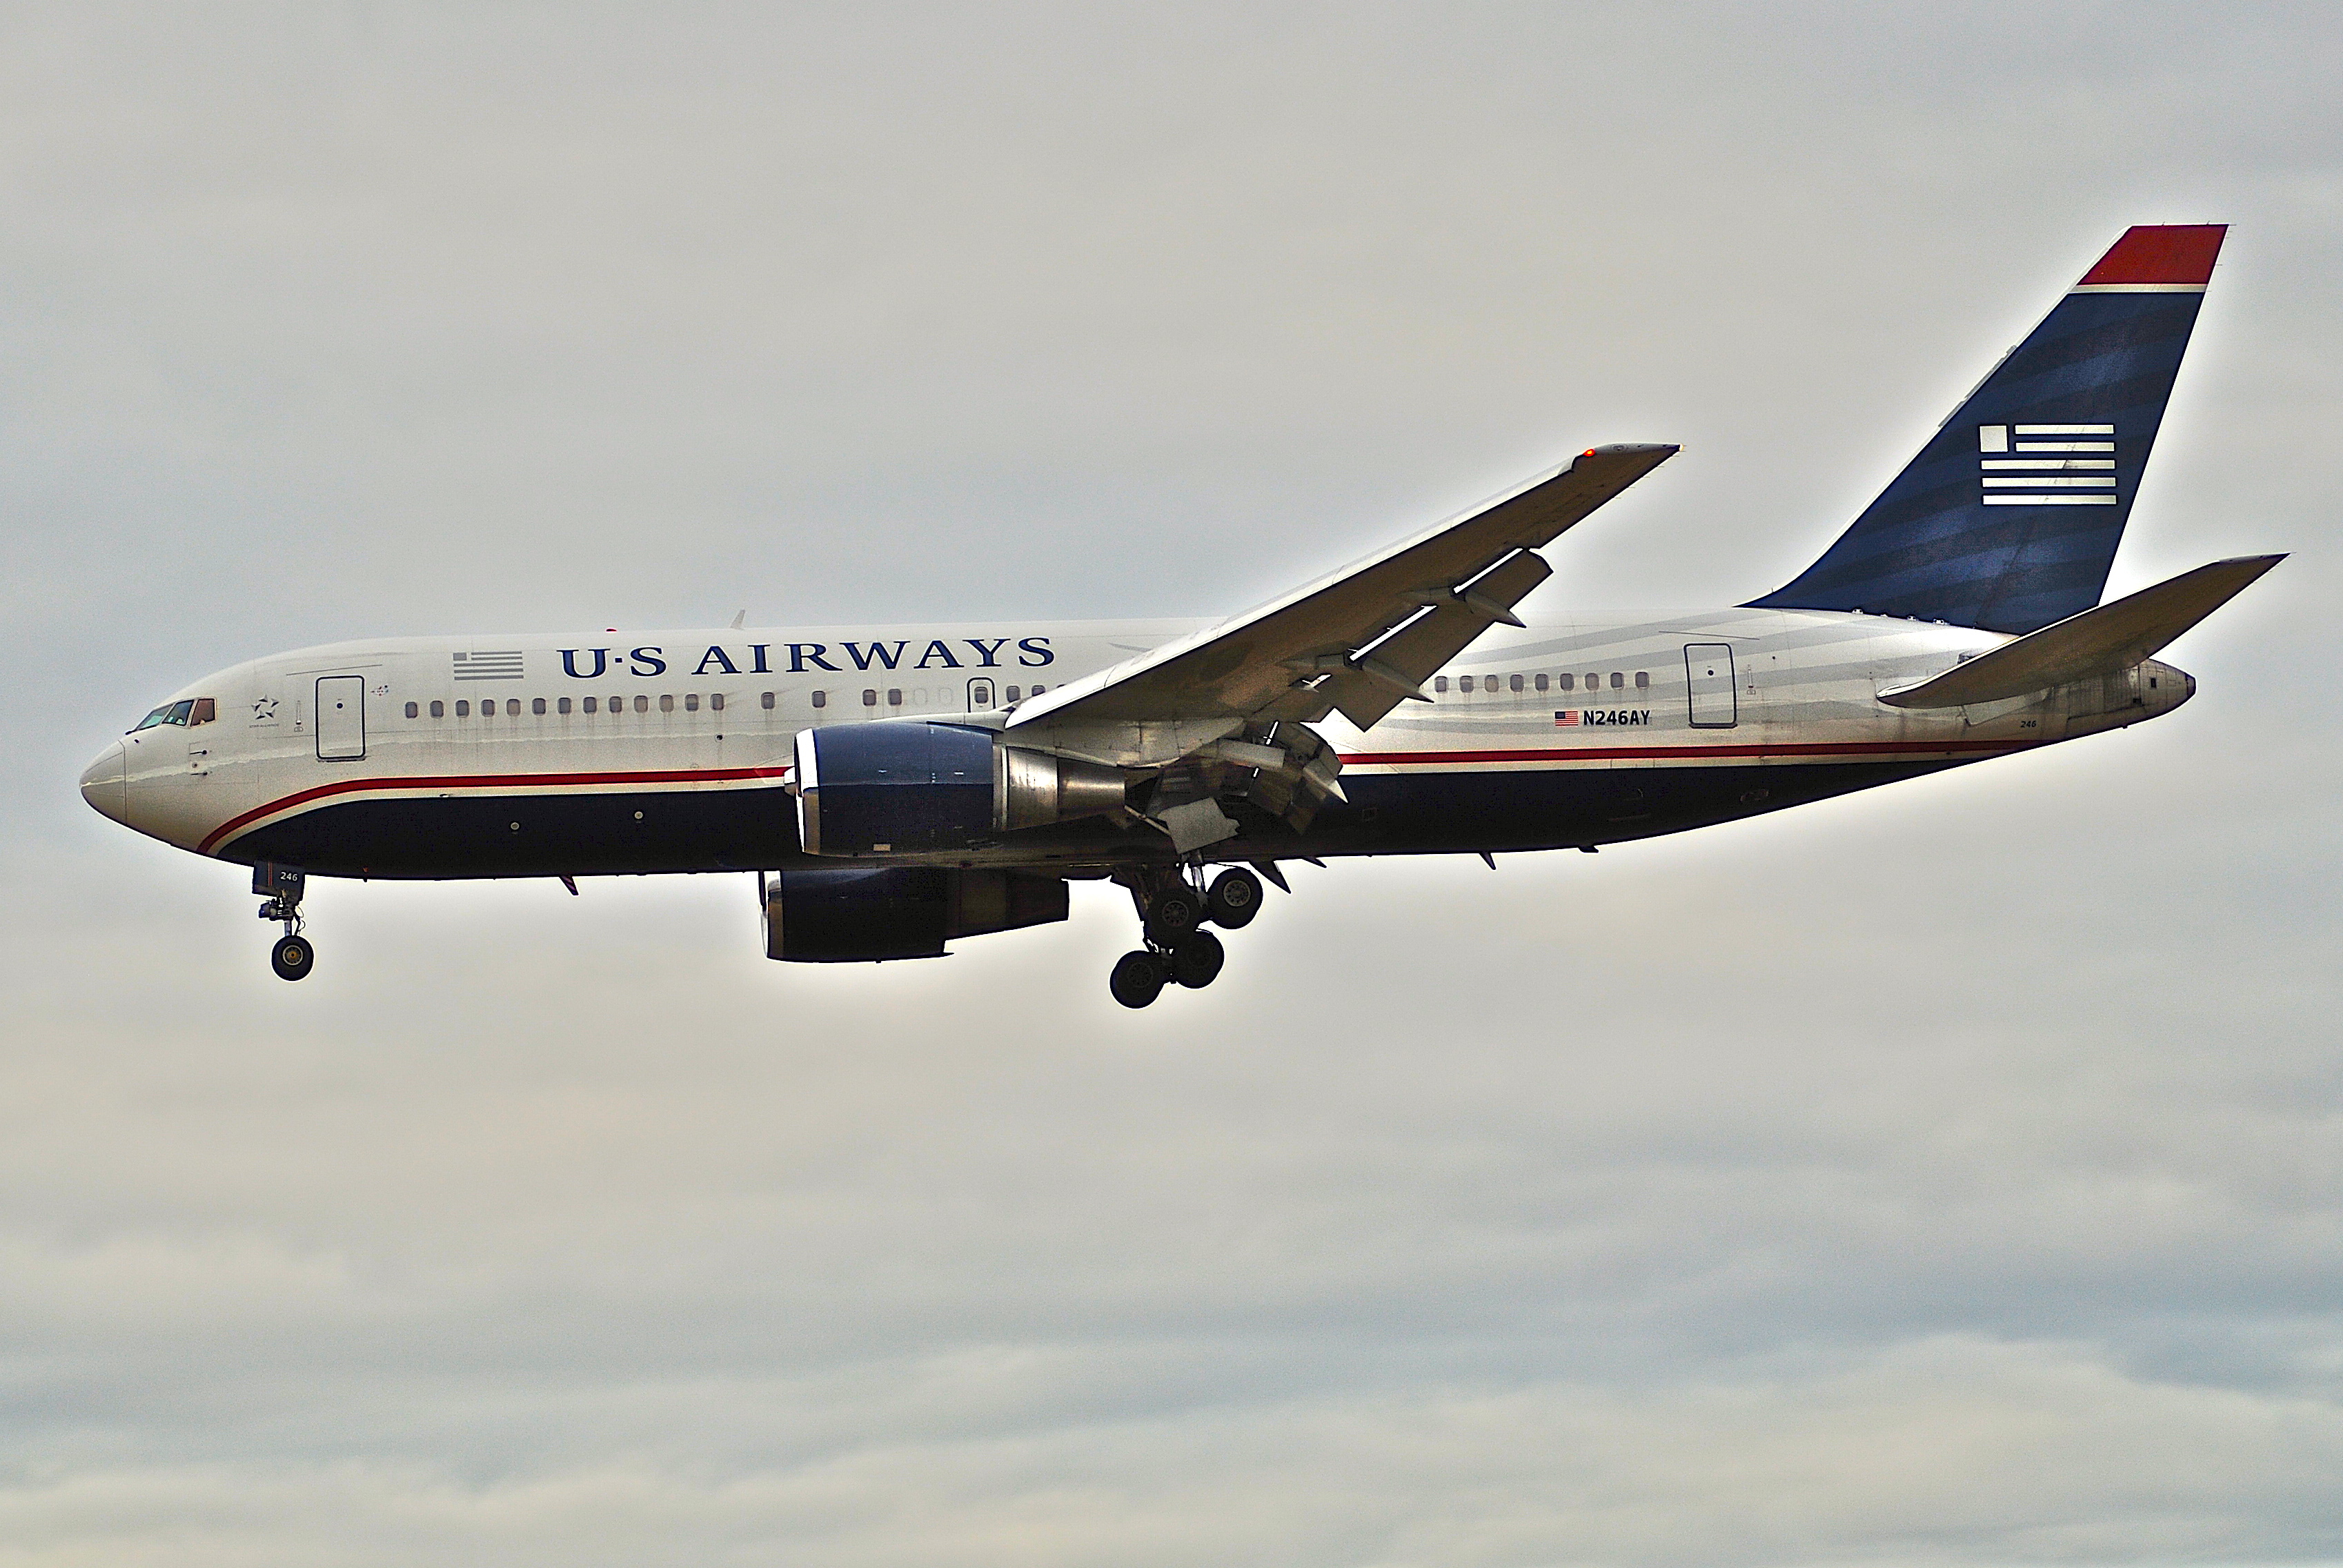 US Airways Boeing 767-200, N246AY@ZRH,19.01.2008-493bf - Flickr - Aero Icarus